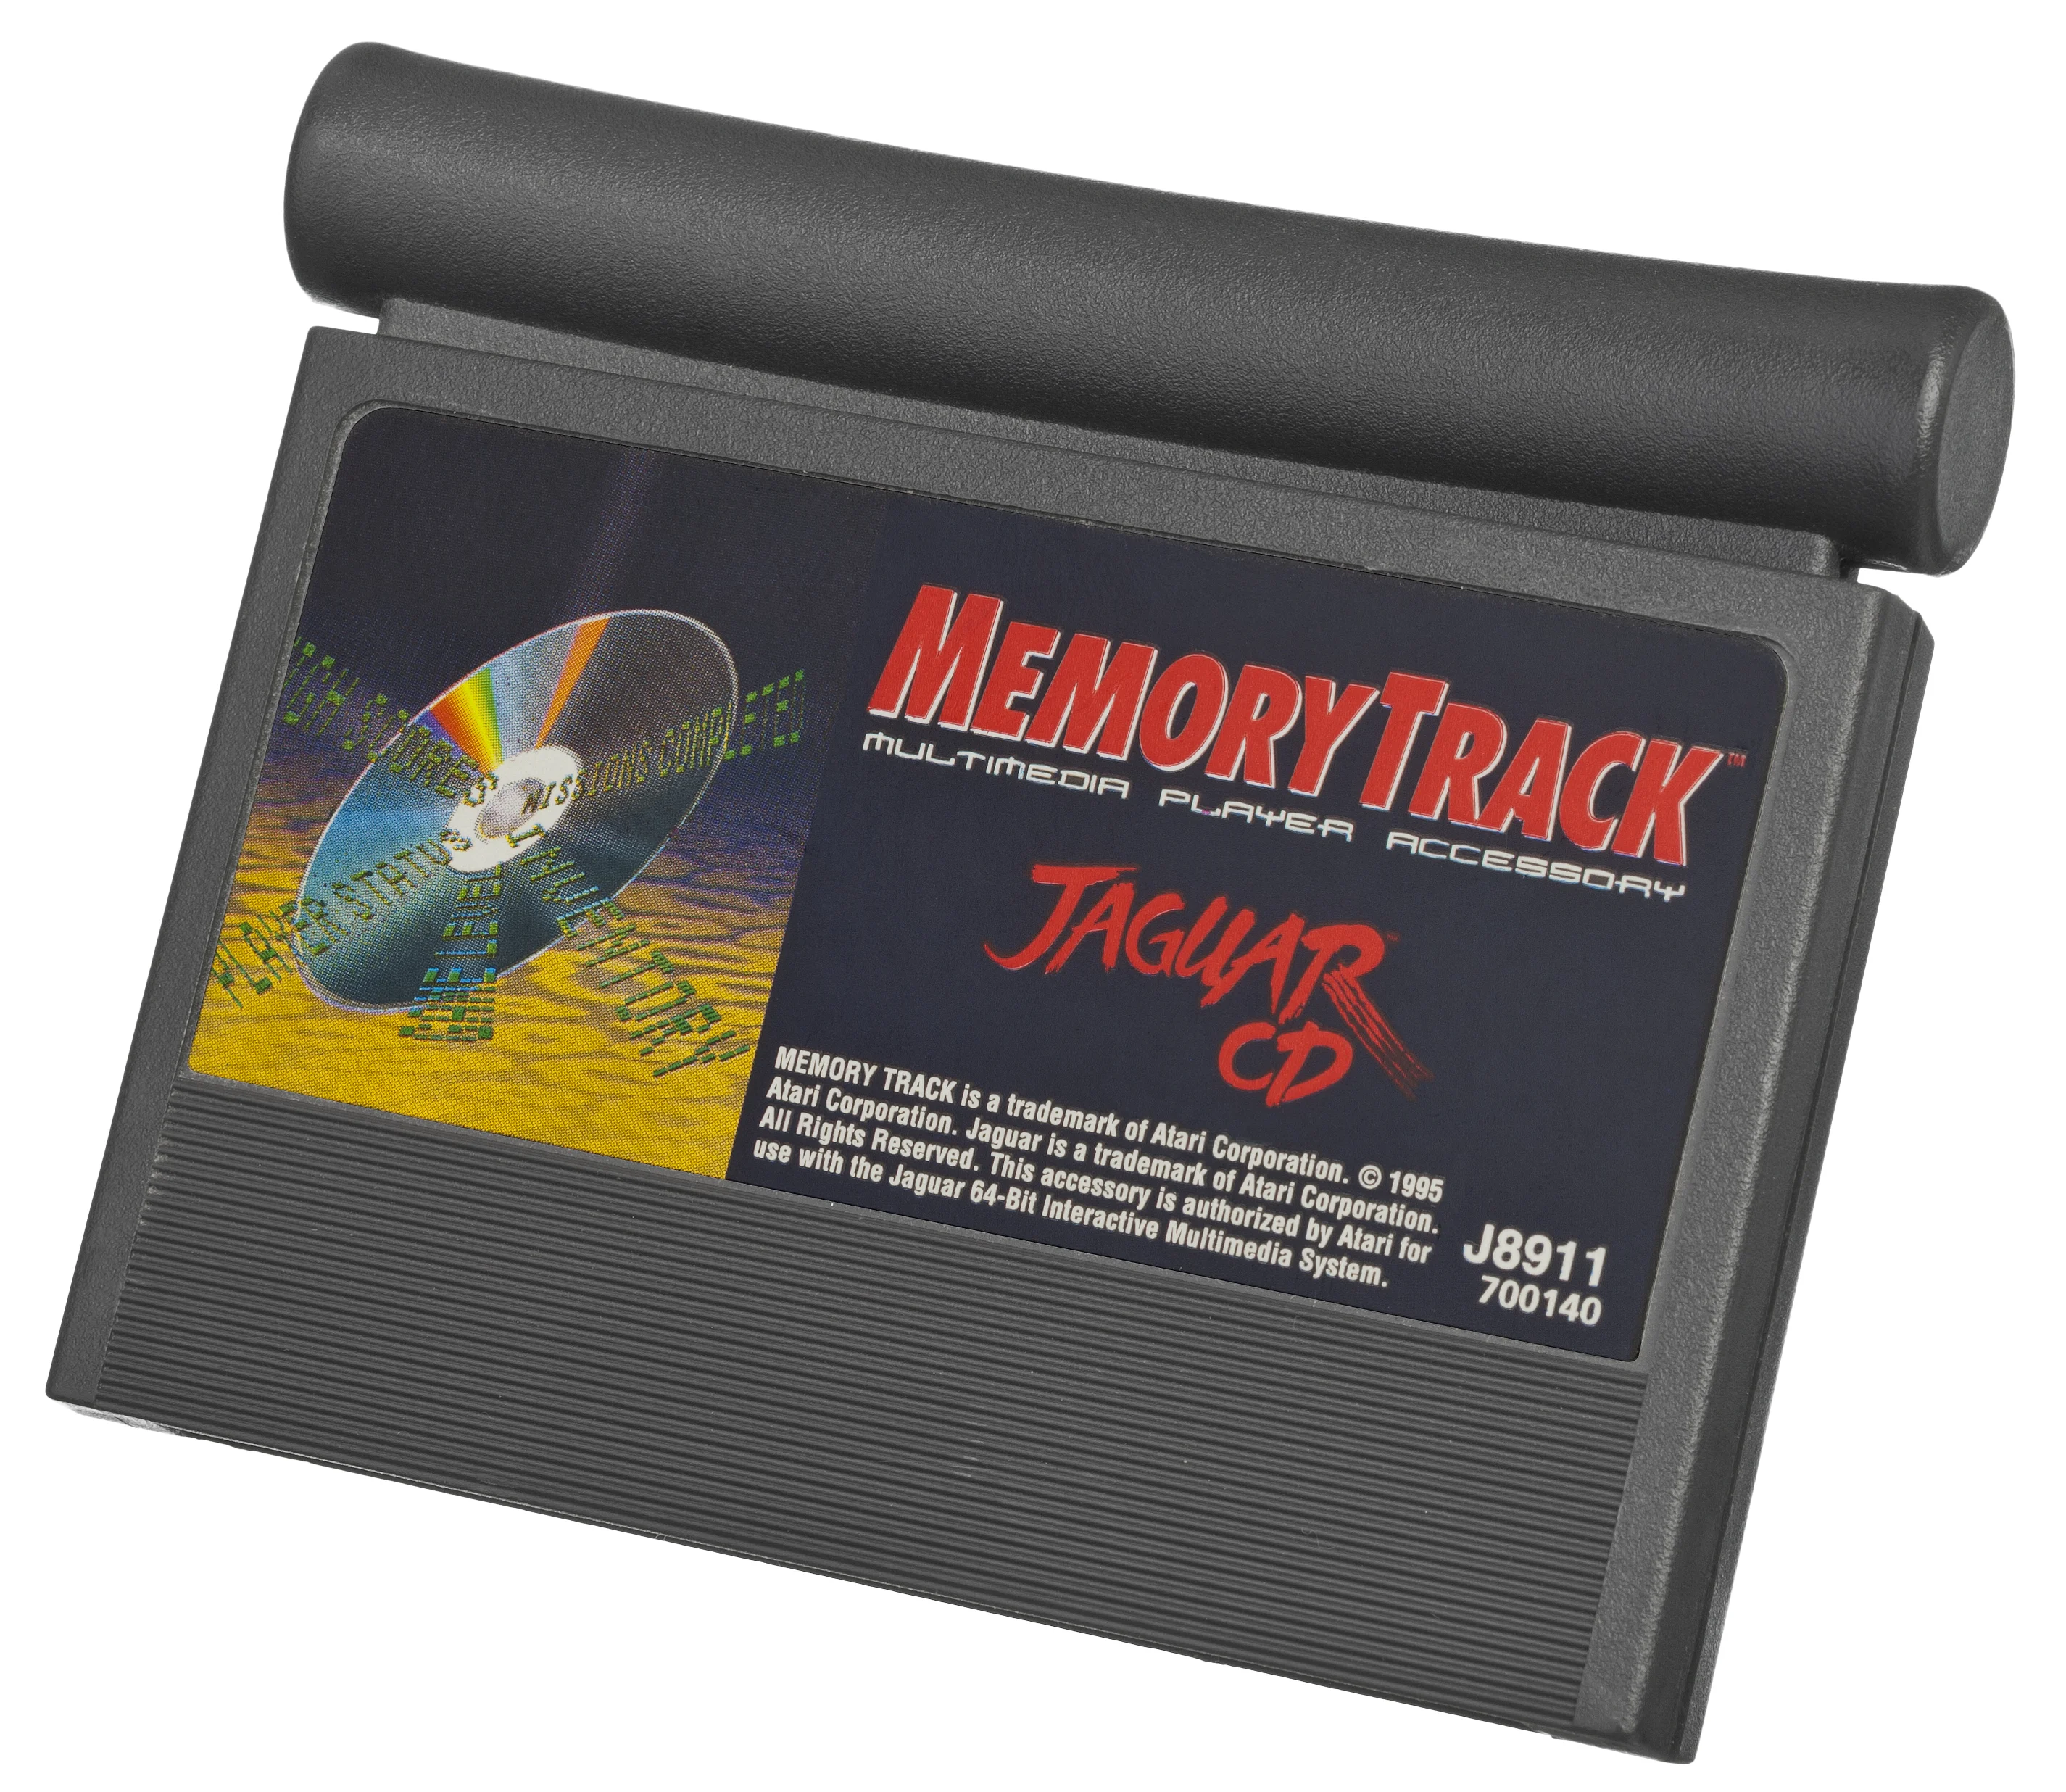  Atari Jaguar CD Memory Track Cartridge